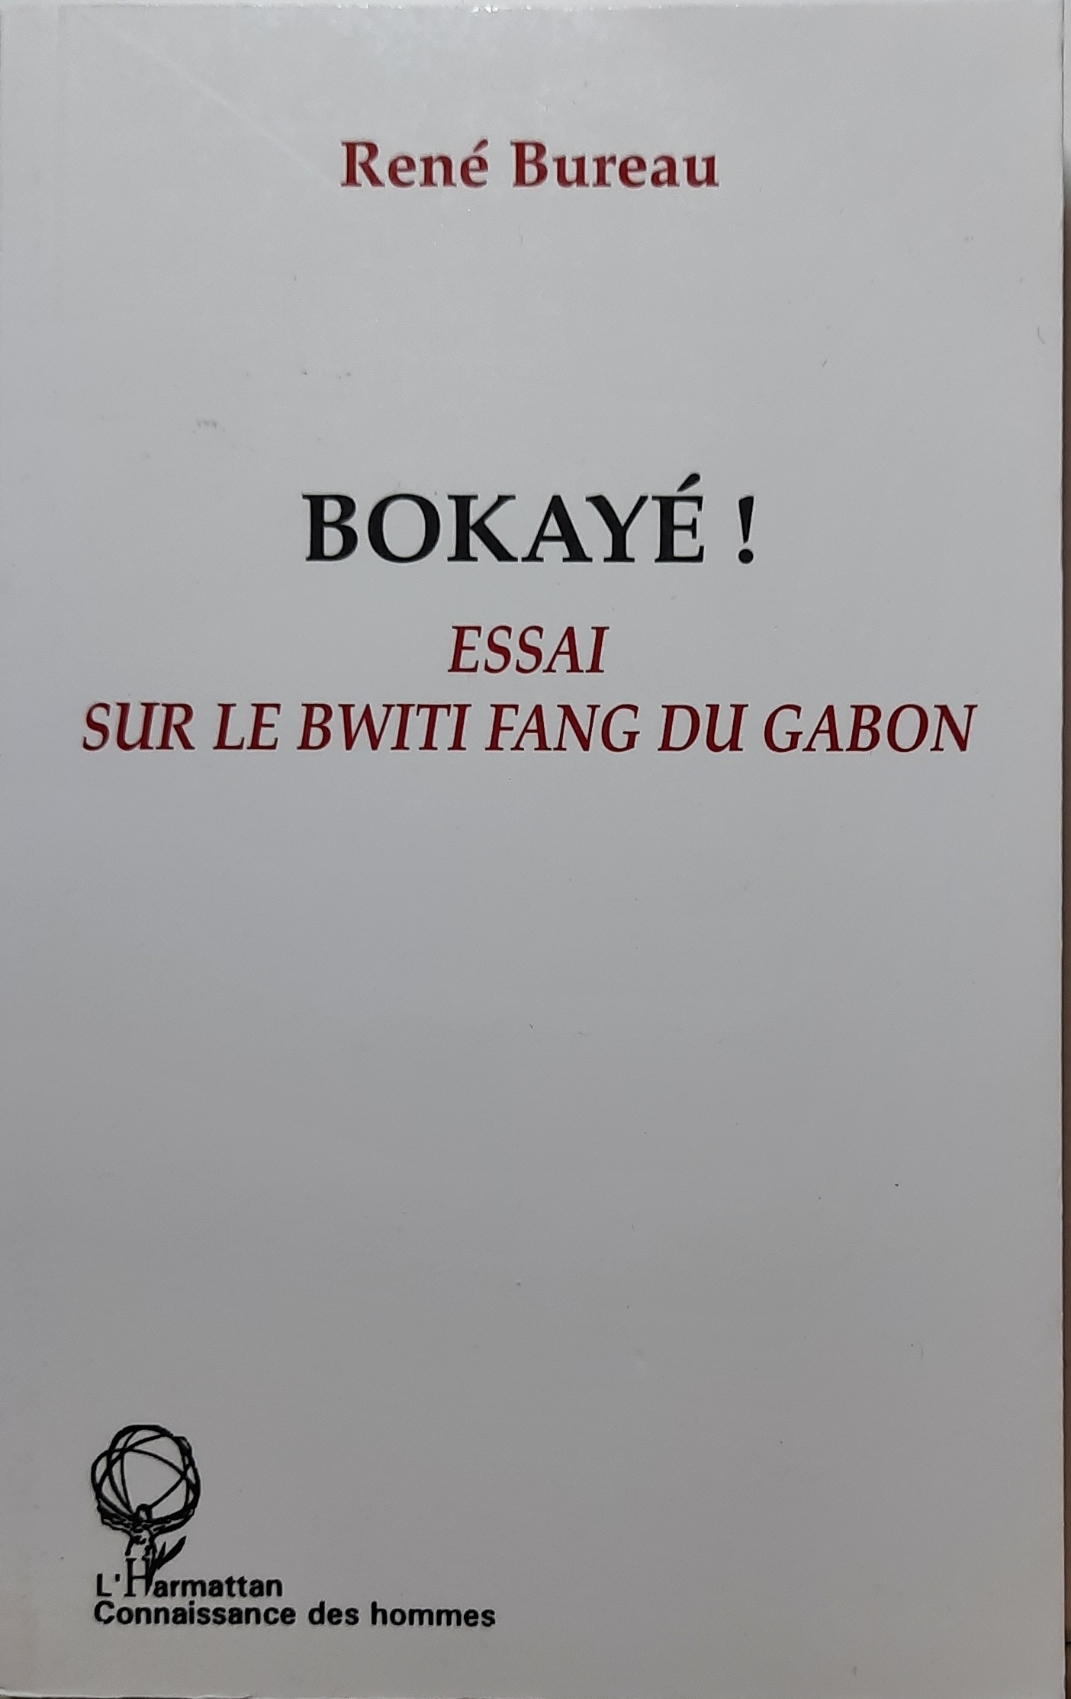 Book cover 202105320087: BUREAU René | Bokayé ! Essai sur le Bwiti Fang du Gabon